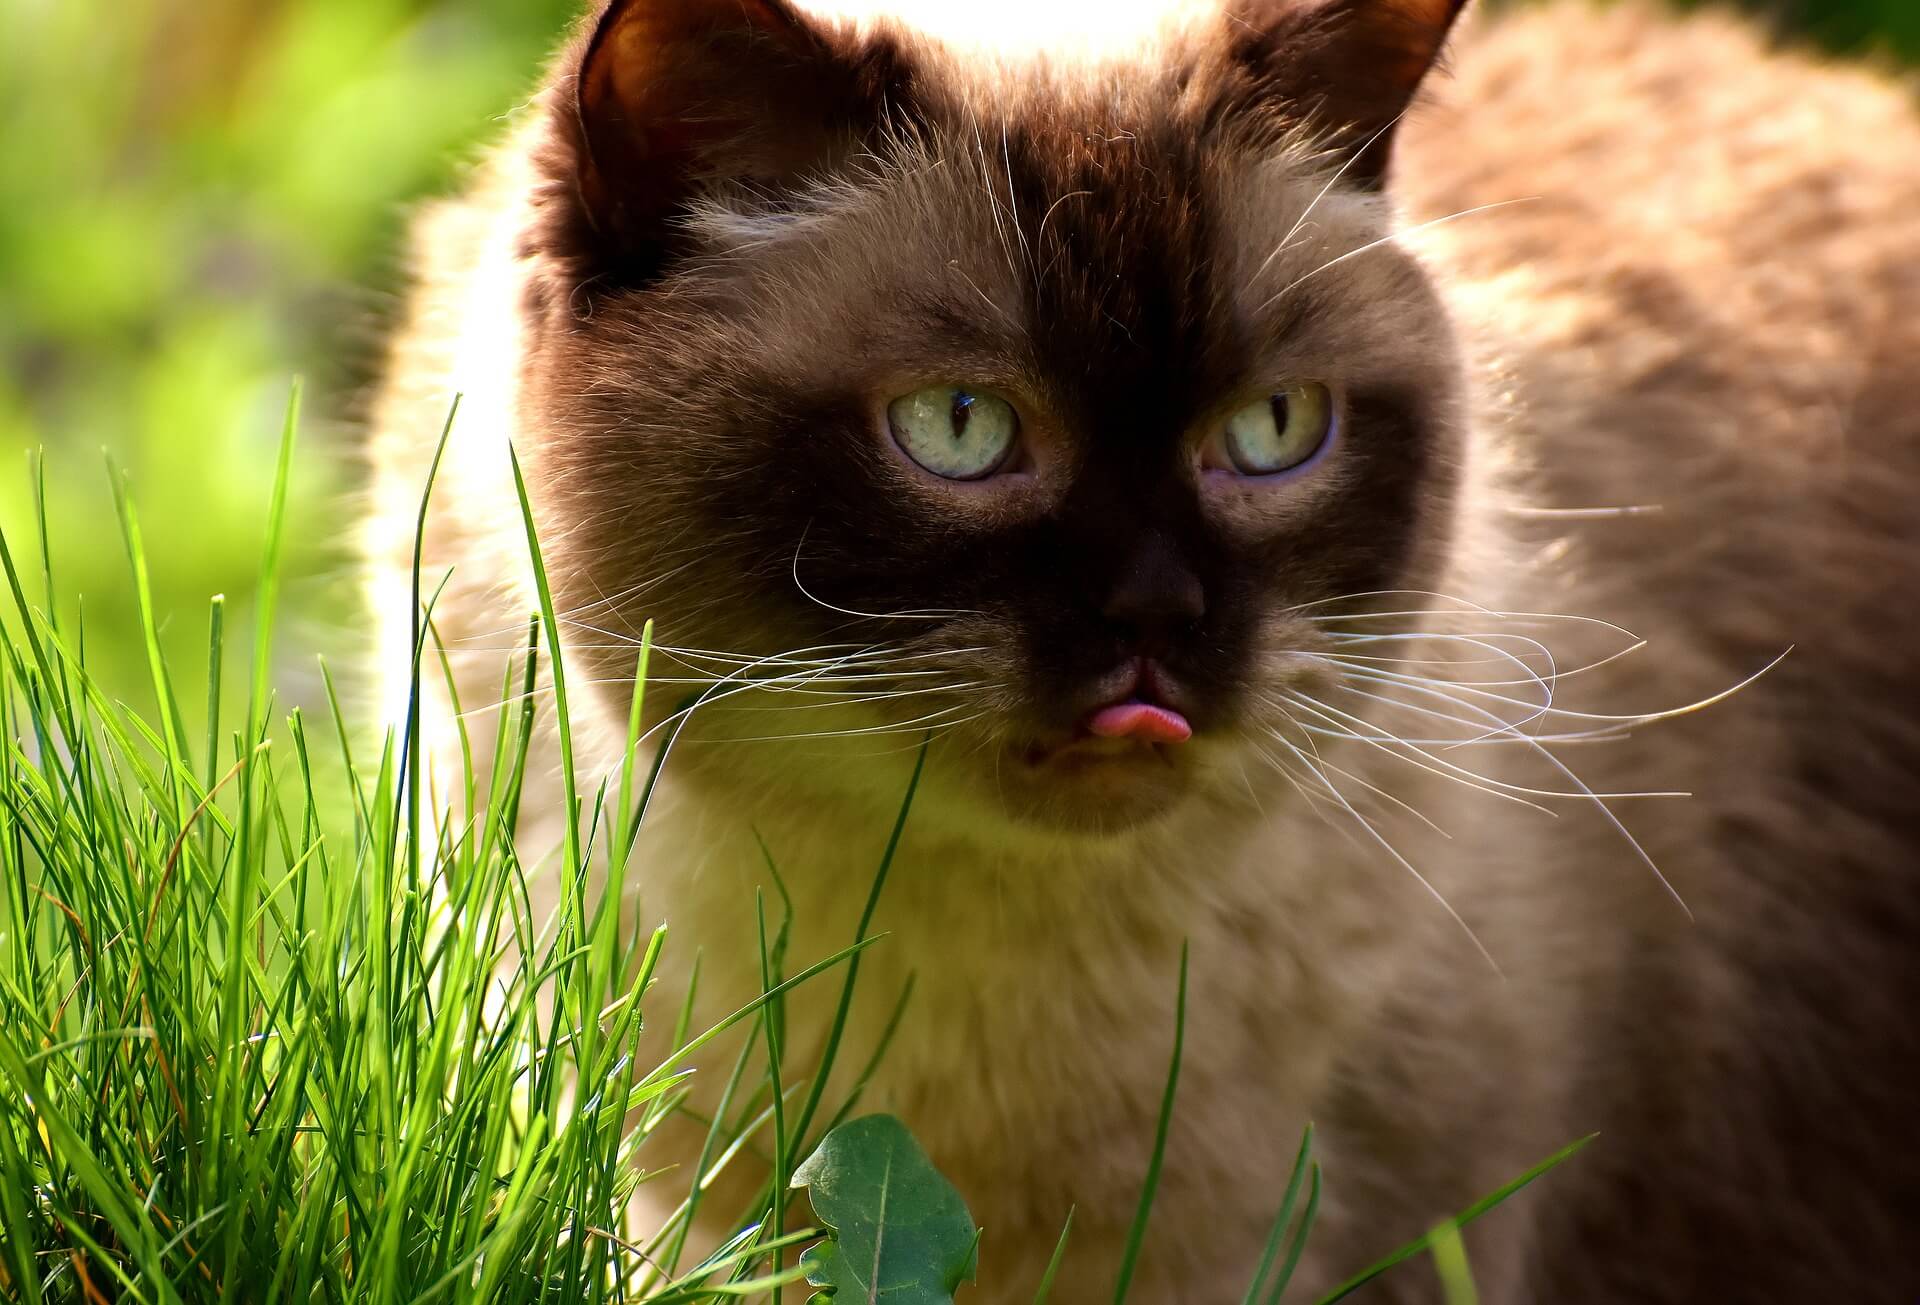 Quels sont les effets et les bienfaits de l'herbe à chat ?